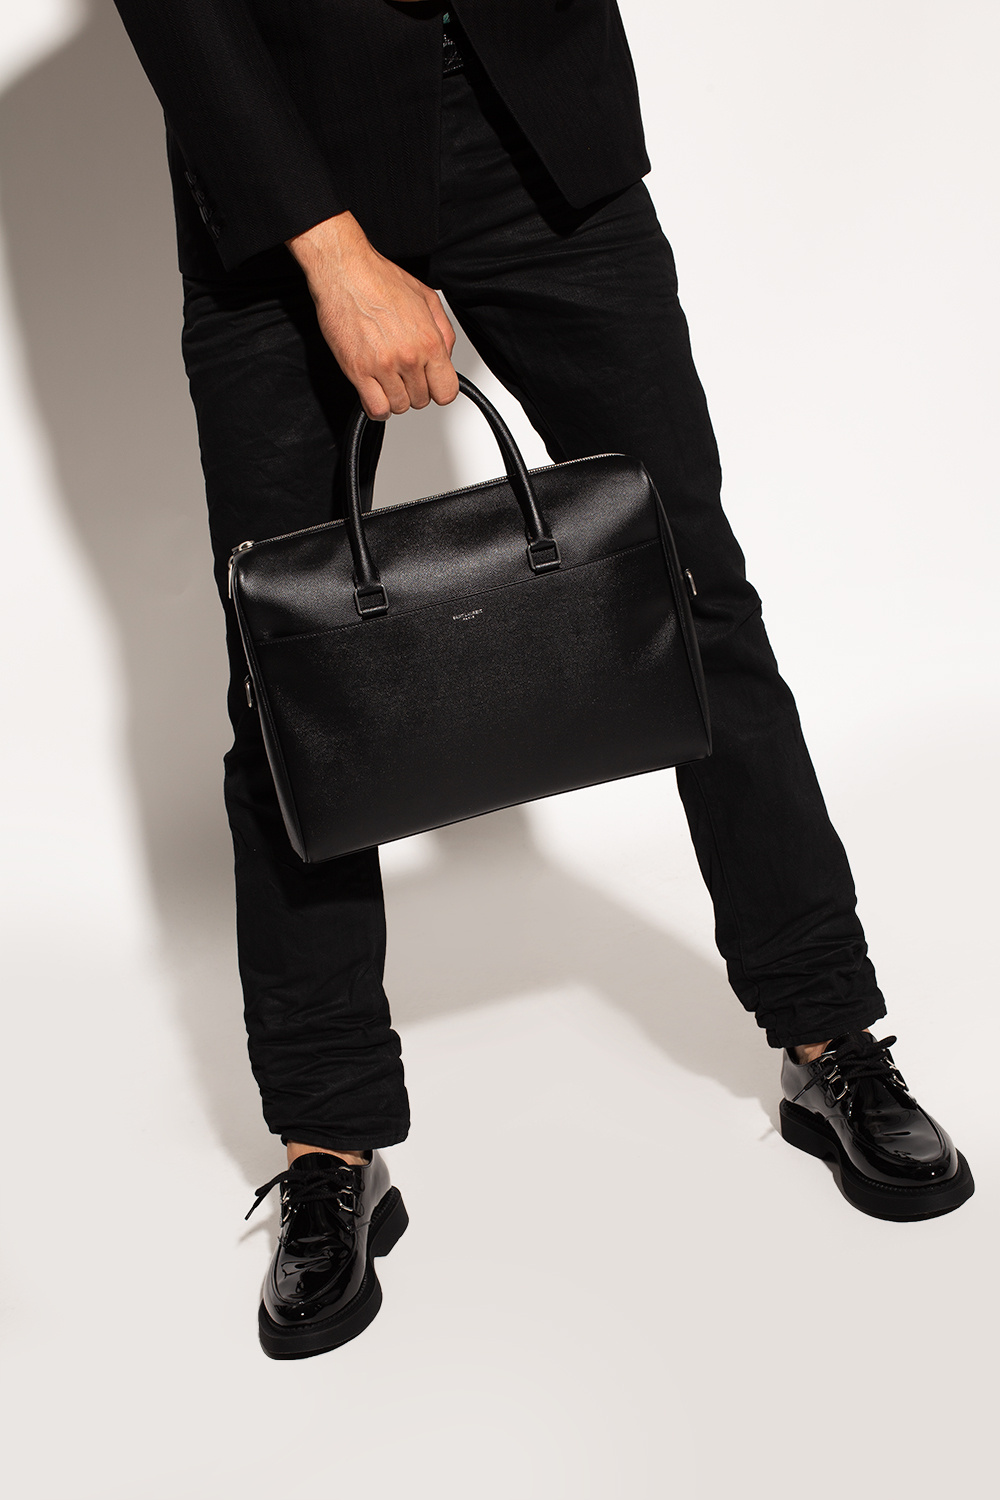 Saint Laurent Leather briefcase